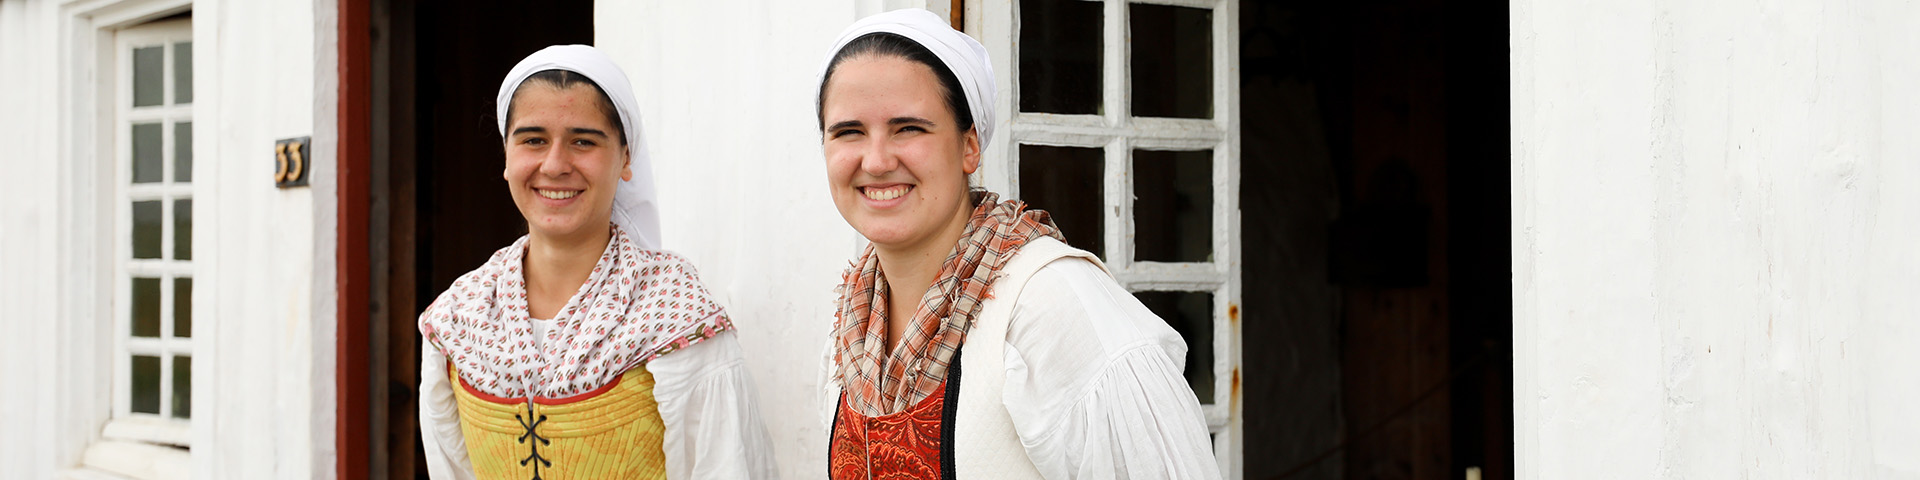 Deux femmes sourient à la caméra en portant des costumes traditionnels basques.